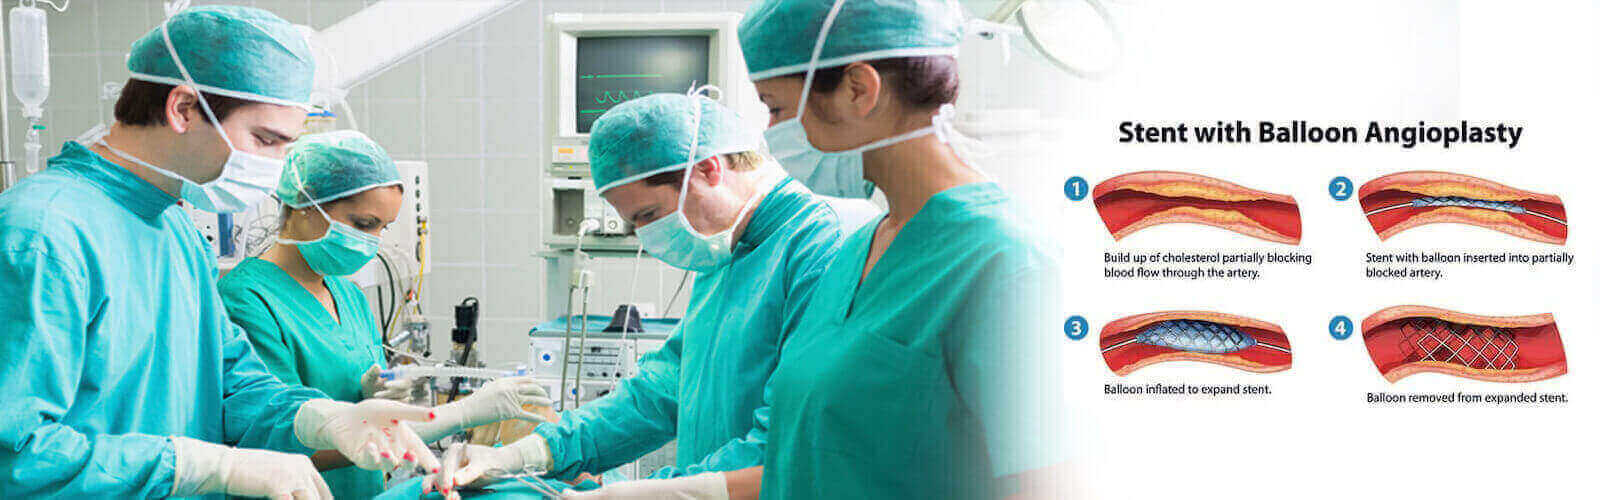 Angioplasty Surgery in Yemen